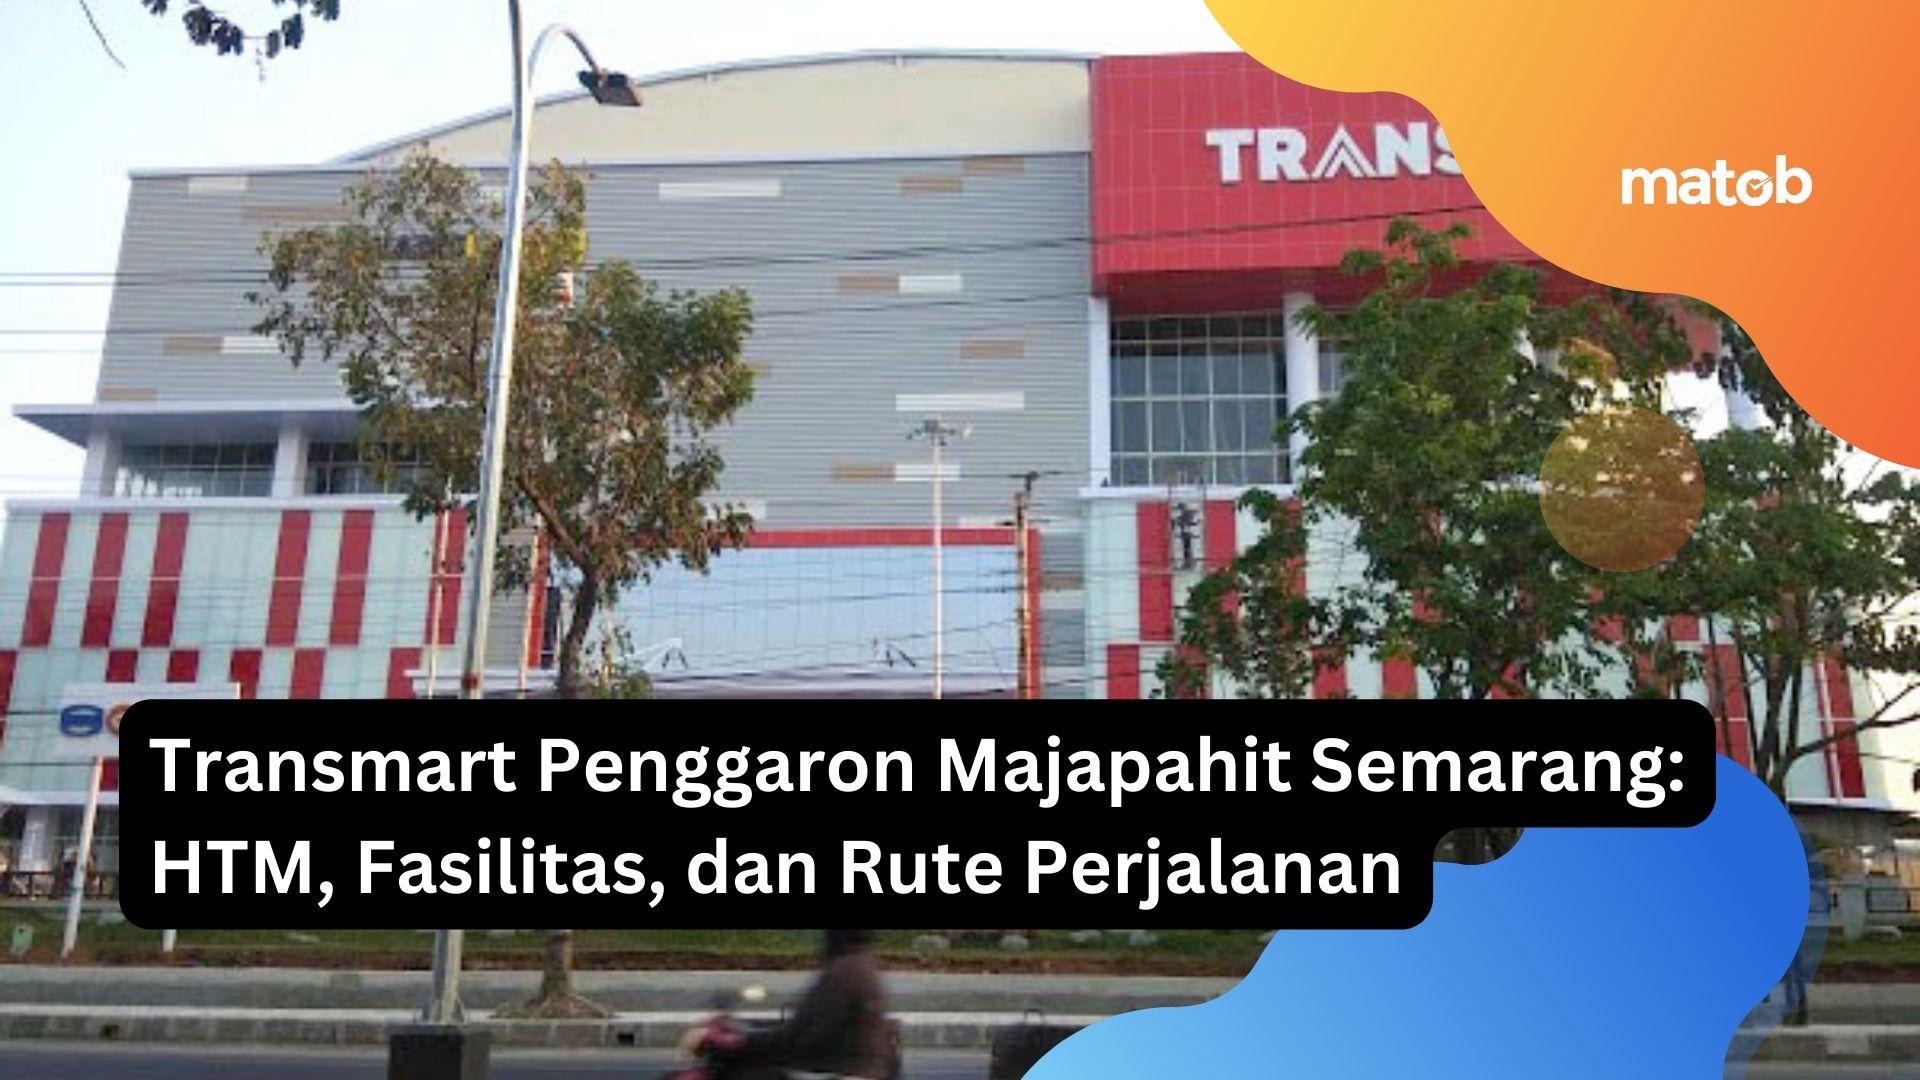 Transmart Penggaron Majapahit Semarang: HTM, Fasilitas, dan Rute Perjalanan